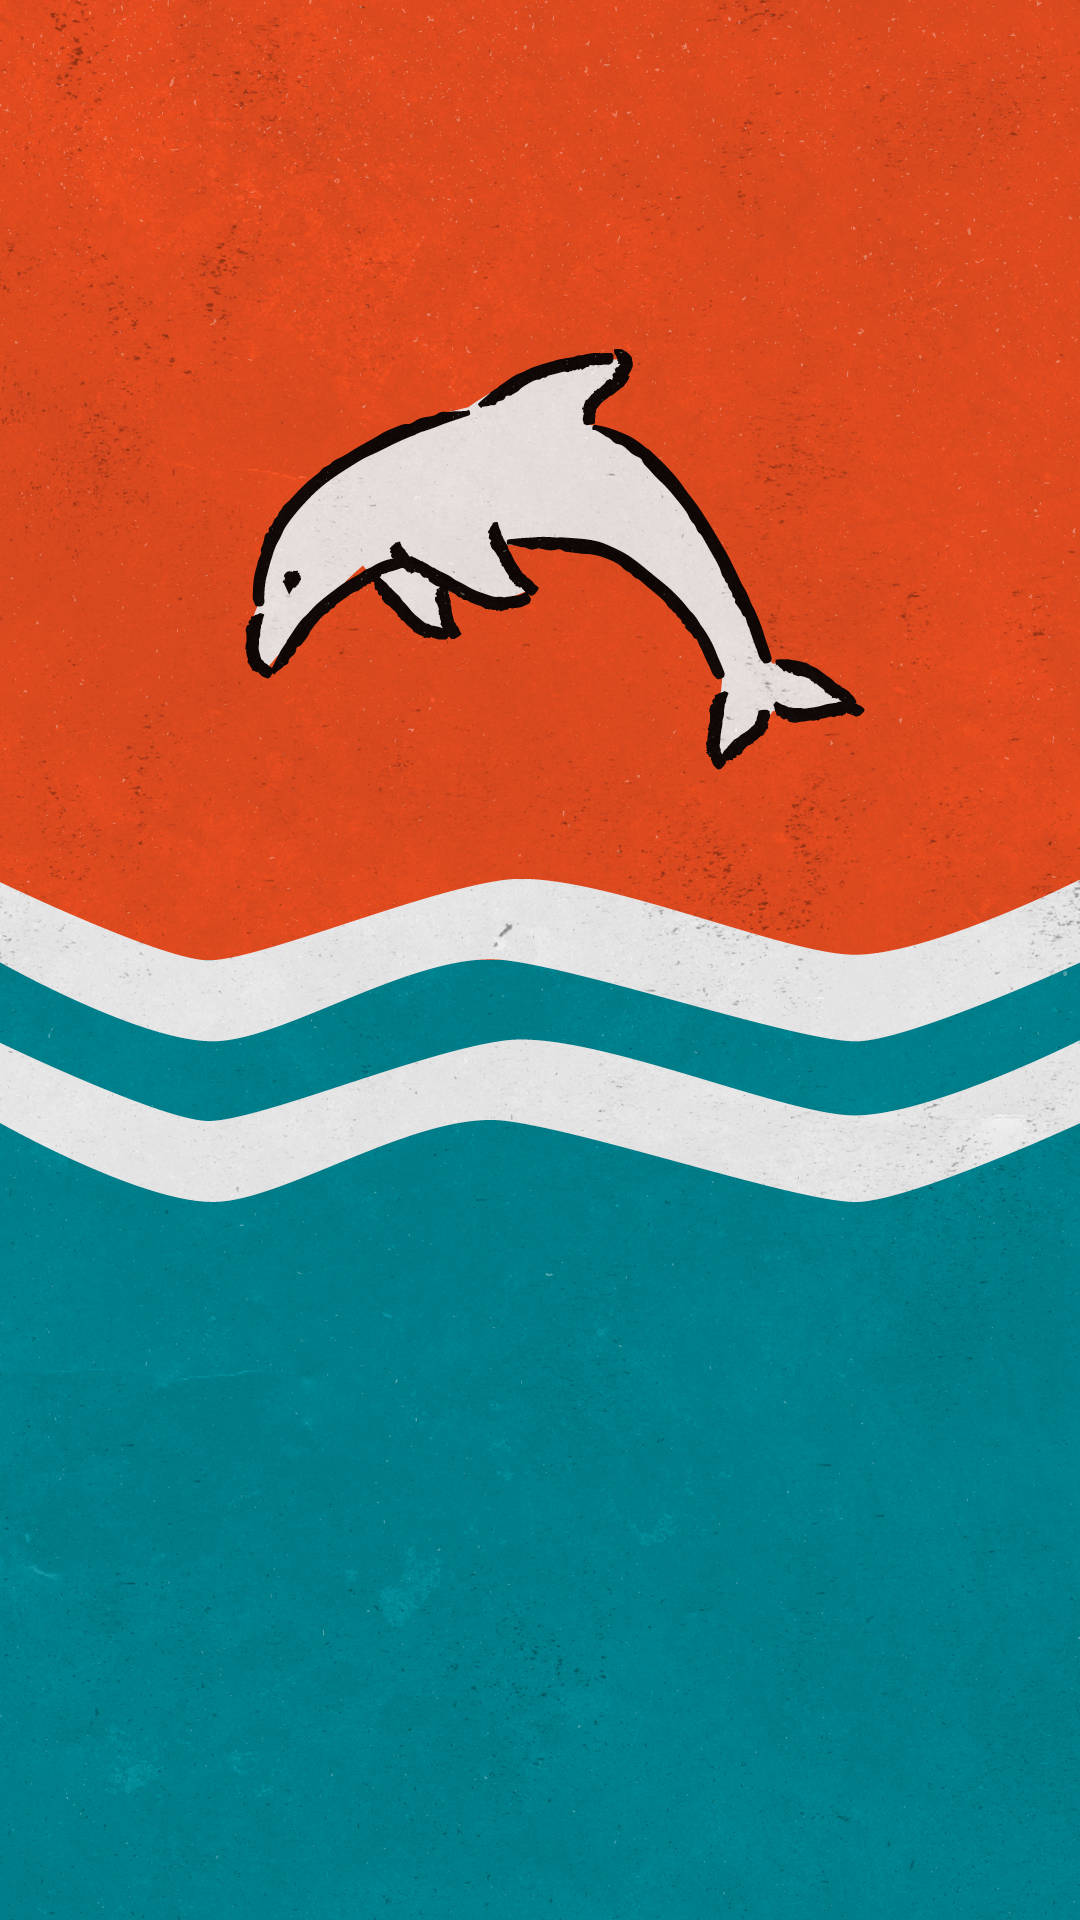 Wallpaperkom In I Spelet Med Miami Dolphins Iphone-bakgrundsbild. Wallpaper